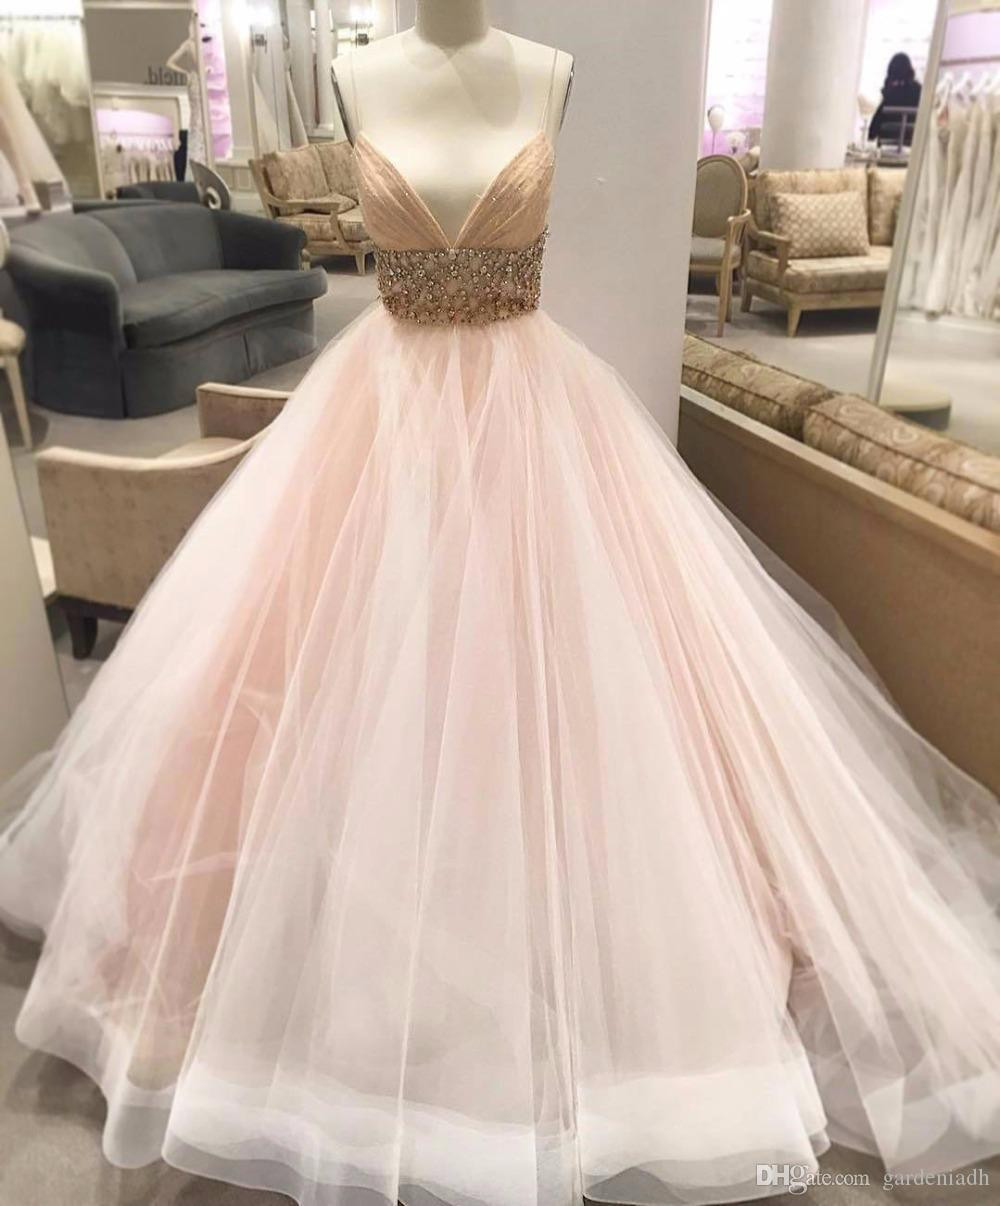 Blush Pink Wedding Gown
 Drop Waist Wedding Dress Pink Blush Ball Gown 2017